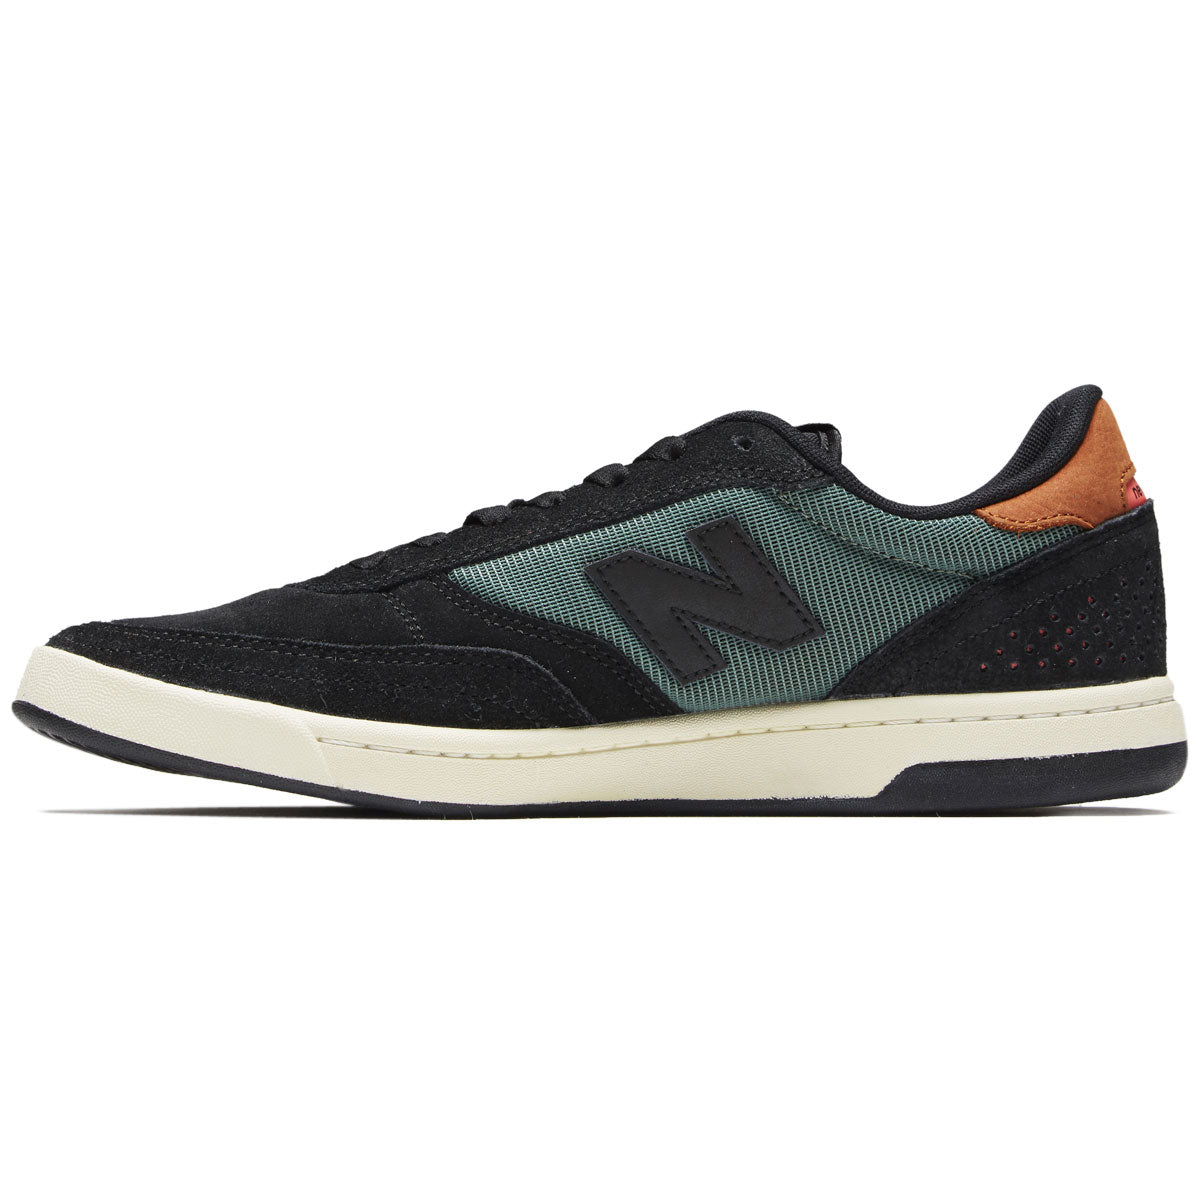 New Balance 440 Shoes - Black/Olive image 2